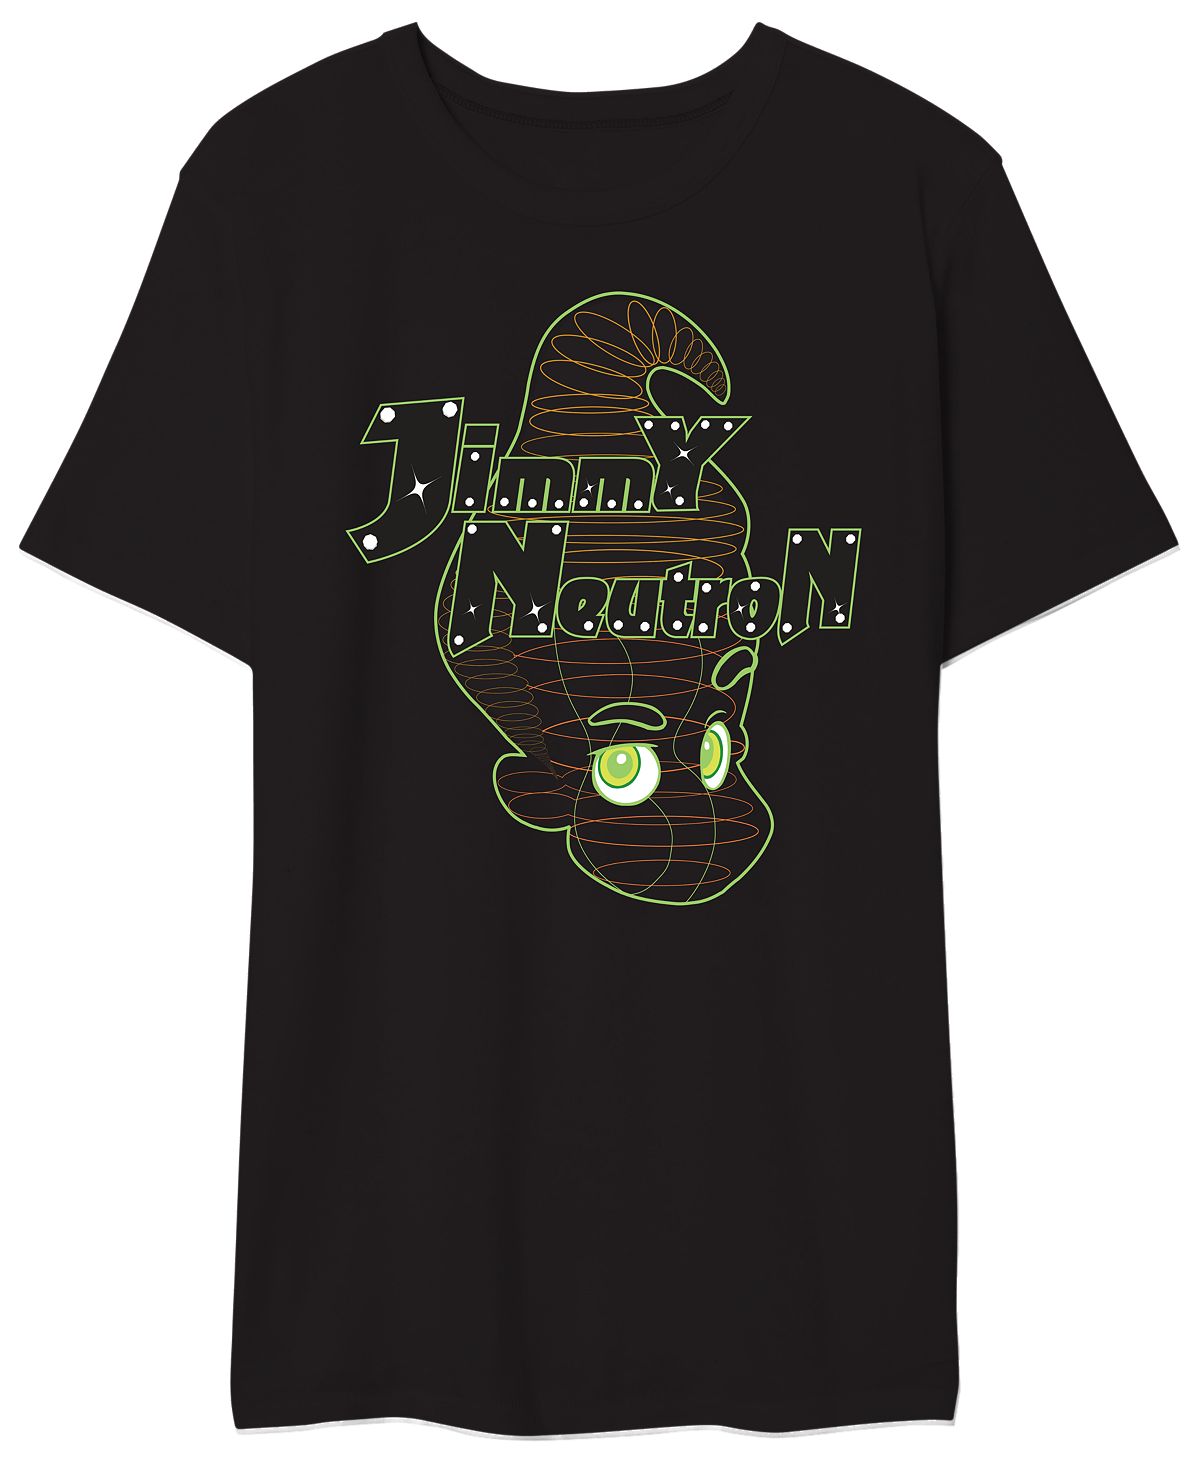 Мужская футболка с рисунком jimmy neutron AIRWAVES, мульти